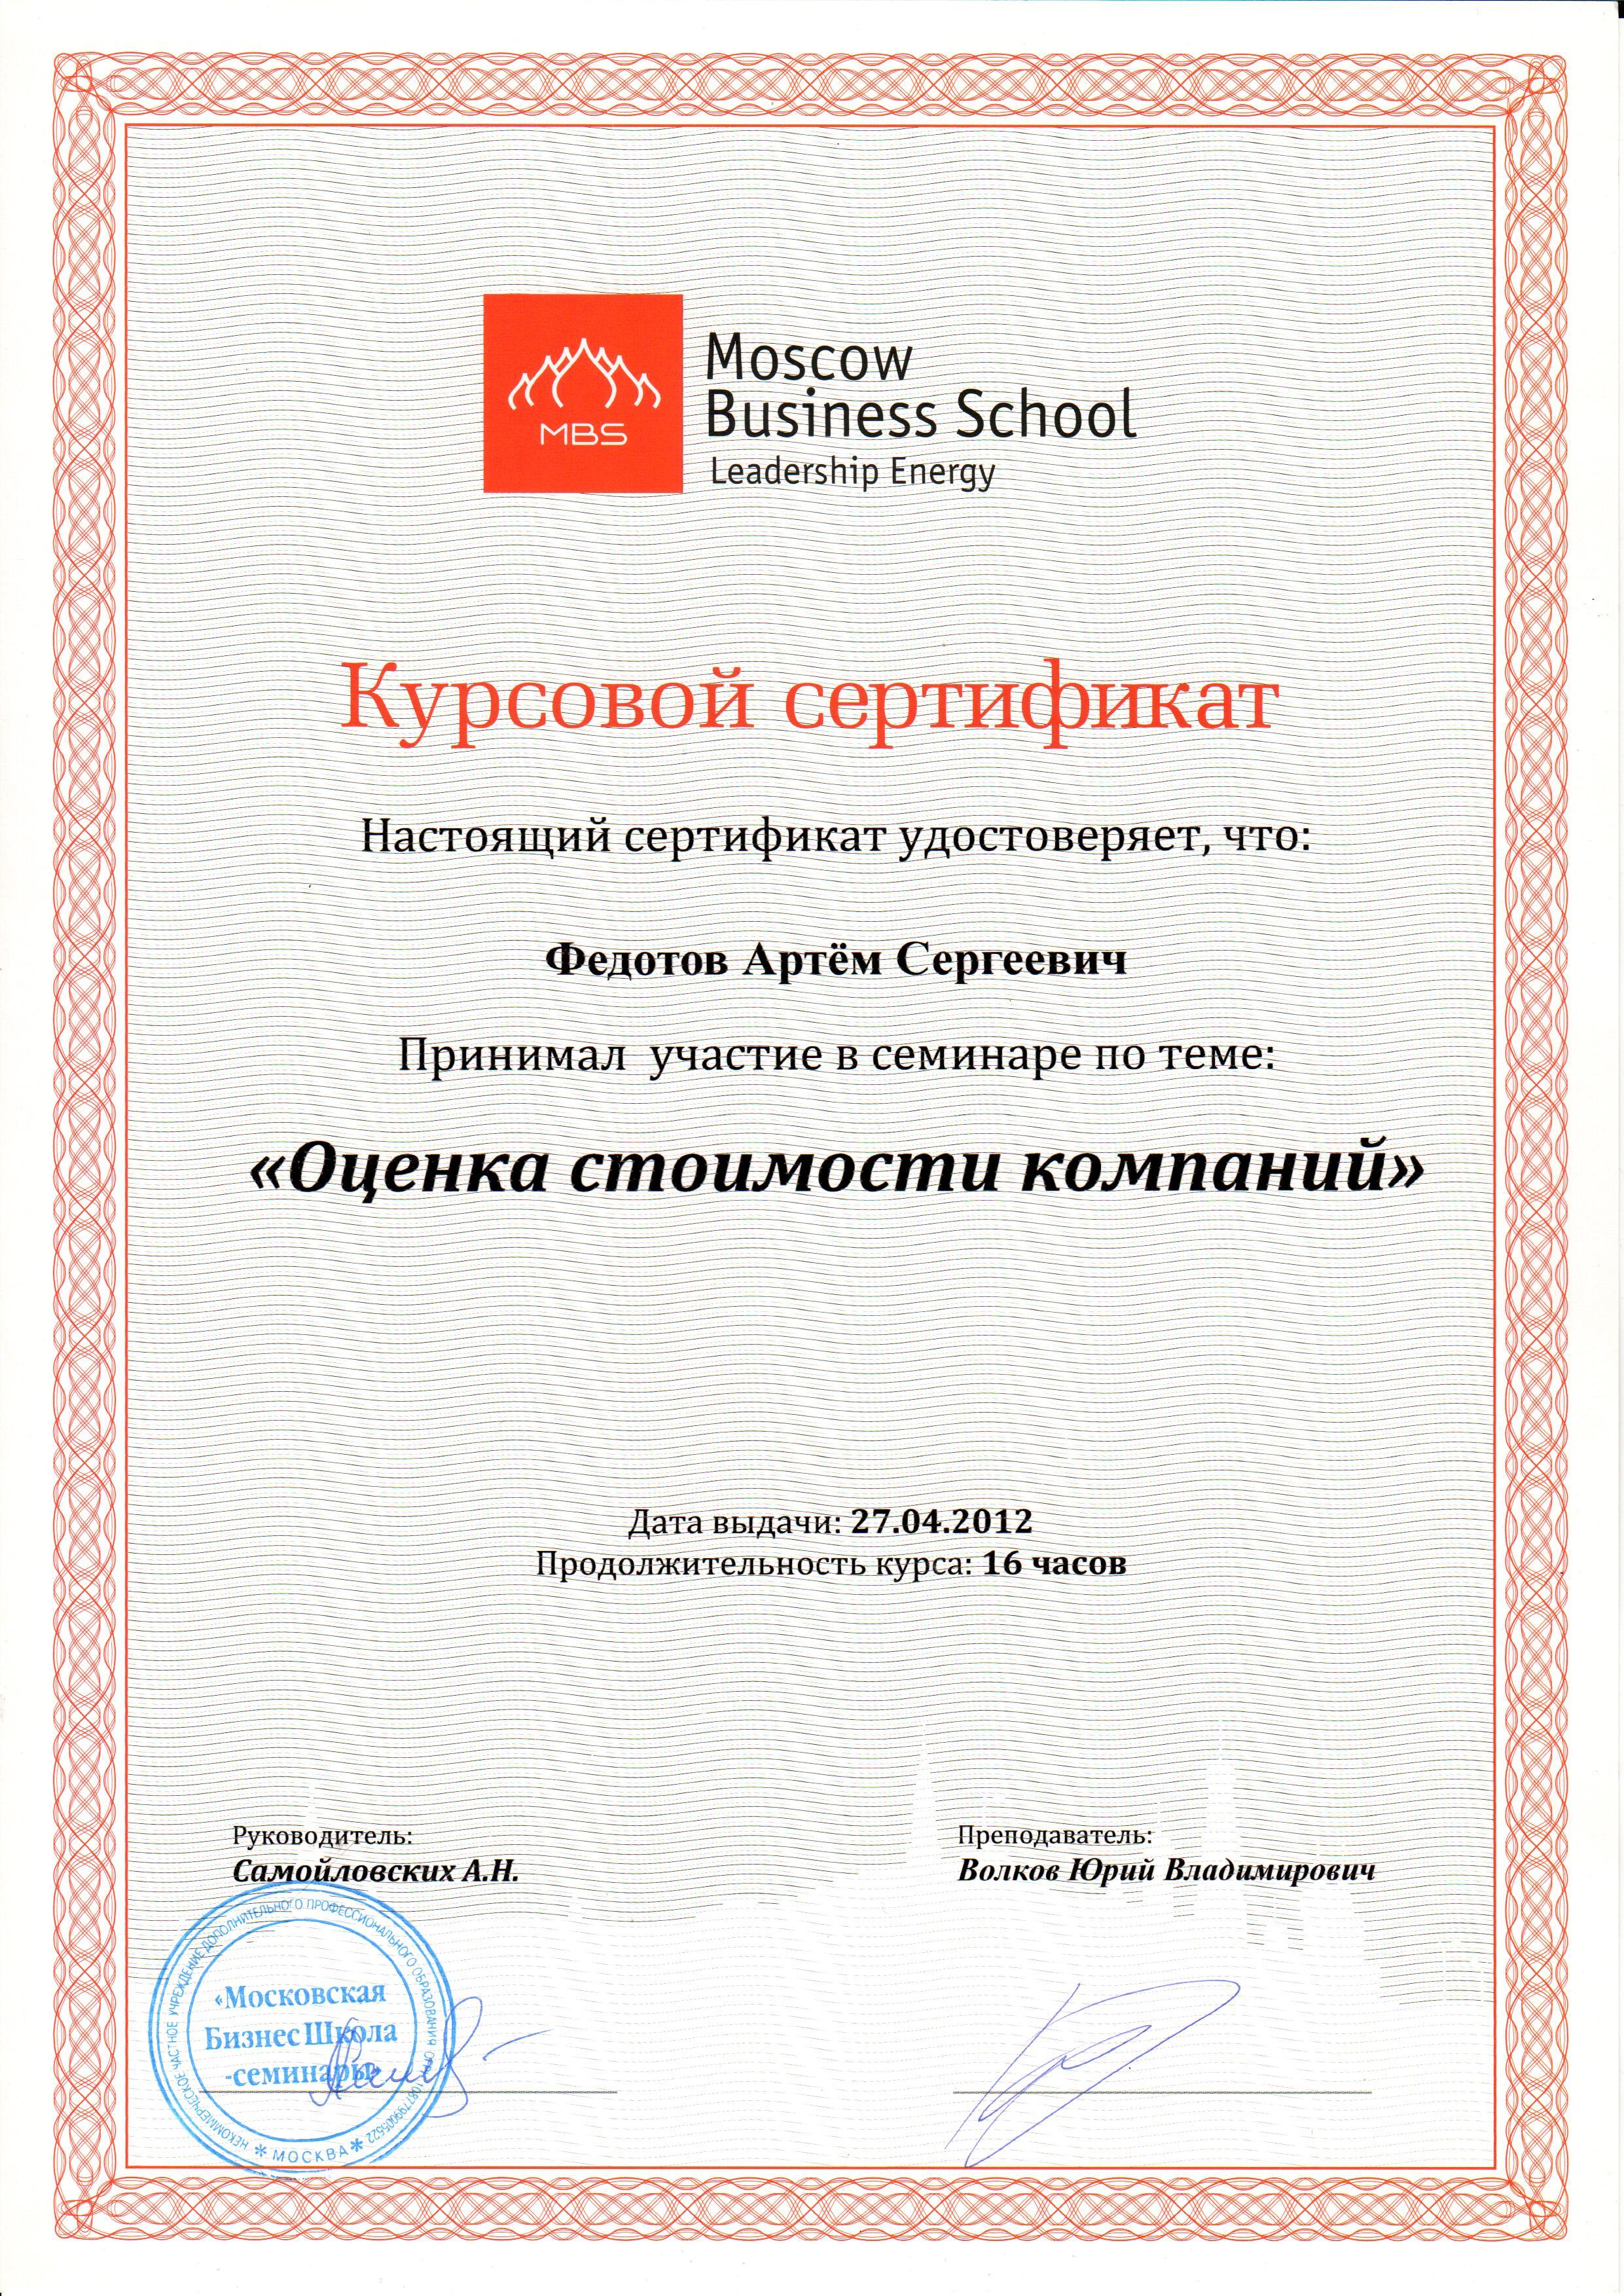 Курсовой сертификат. Оценка стоимости компаний